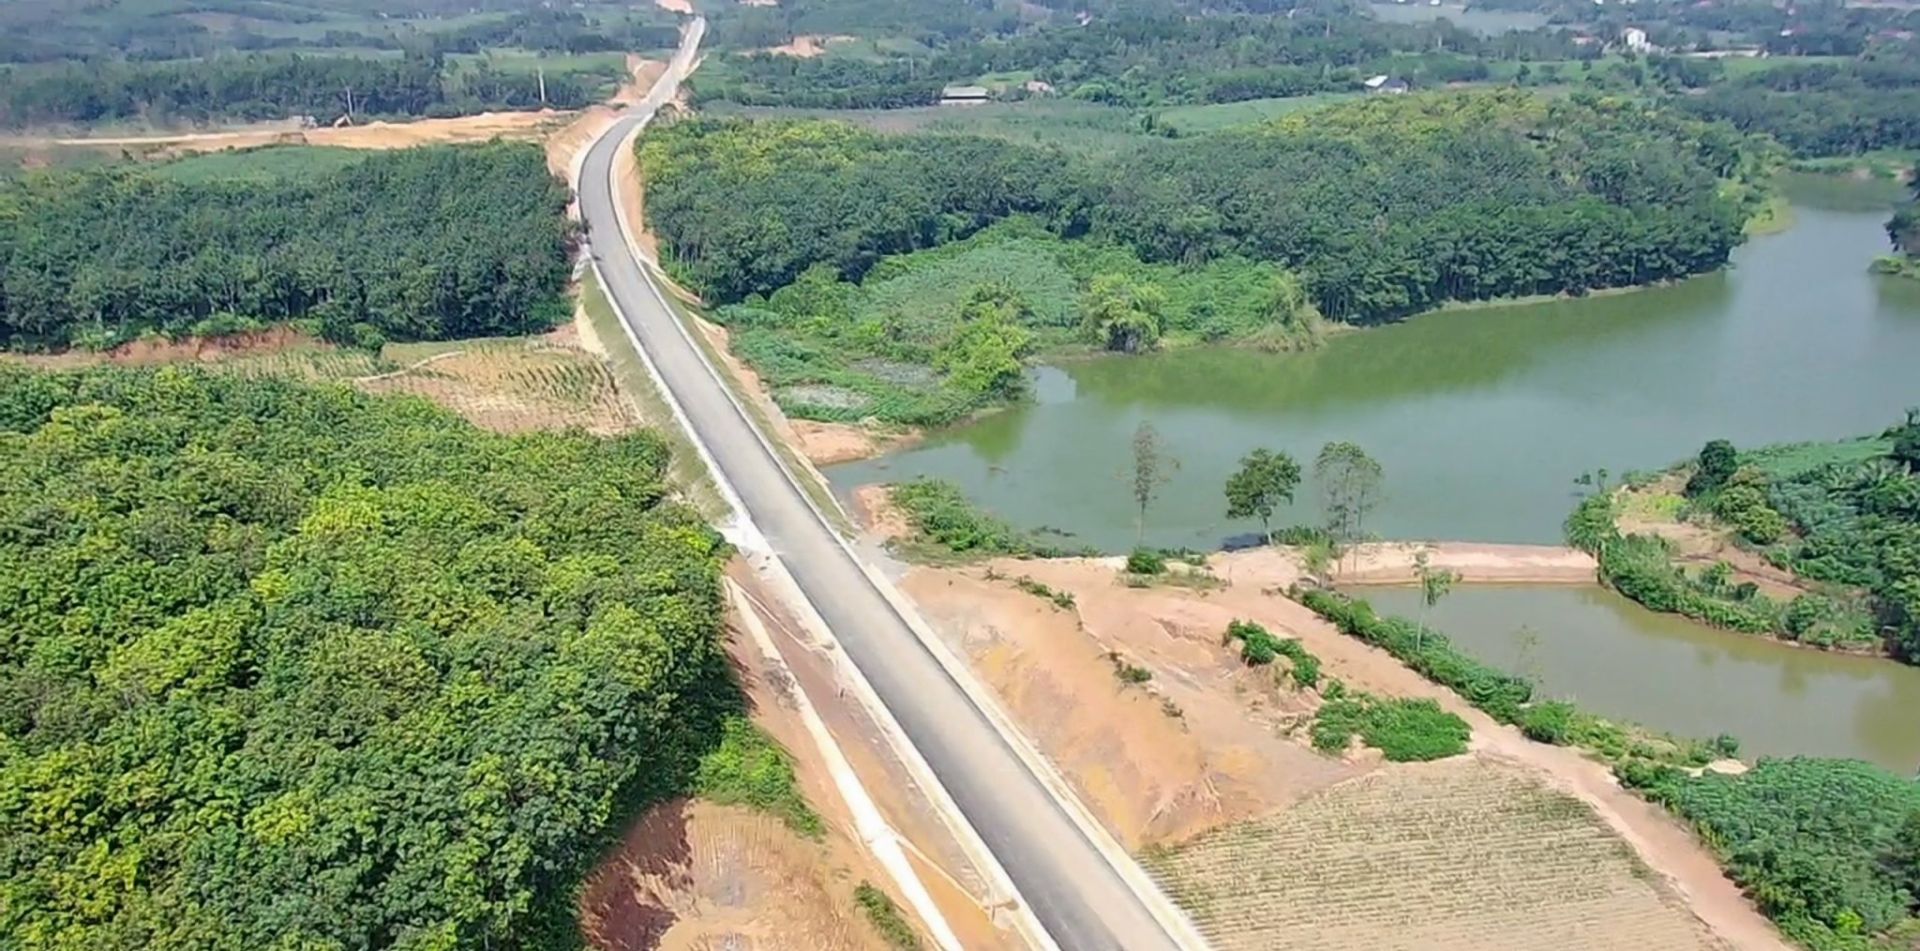 Đường giao thông liên vùng kết nối đường Hồ Chí Minh với Quốc lộ 70B, quốc lộ 32C tỉnh Phú Thọ đi tỉnh Yên Bái, tổng mức đầu tư 2.120 tỷ đồng